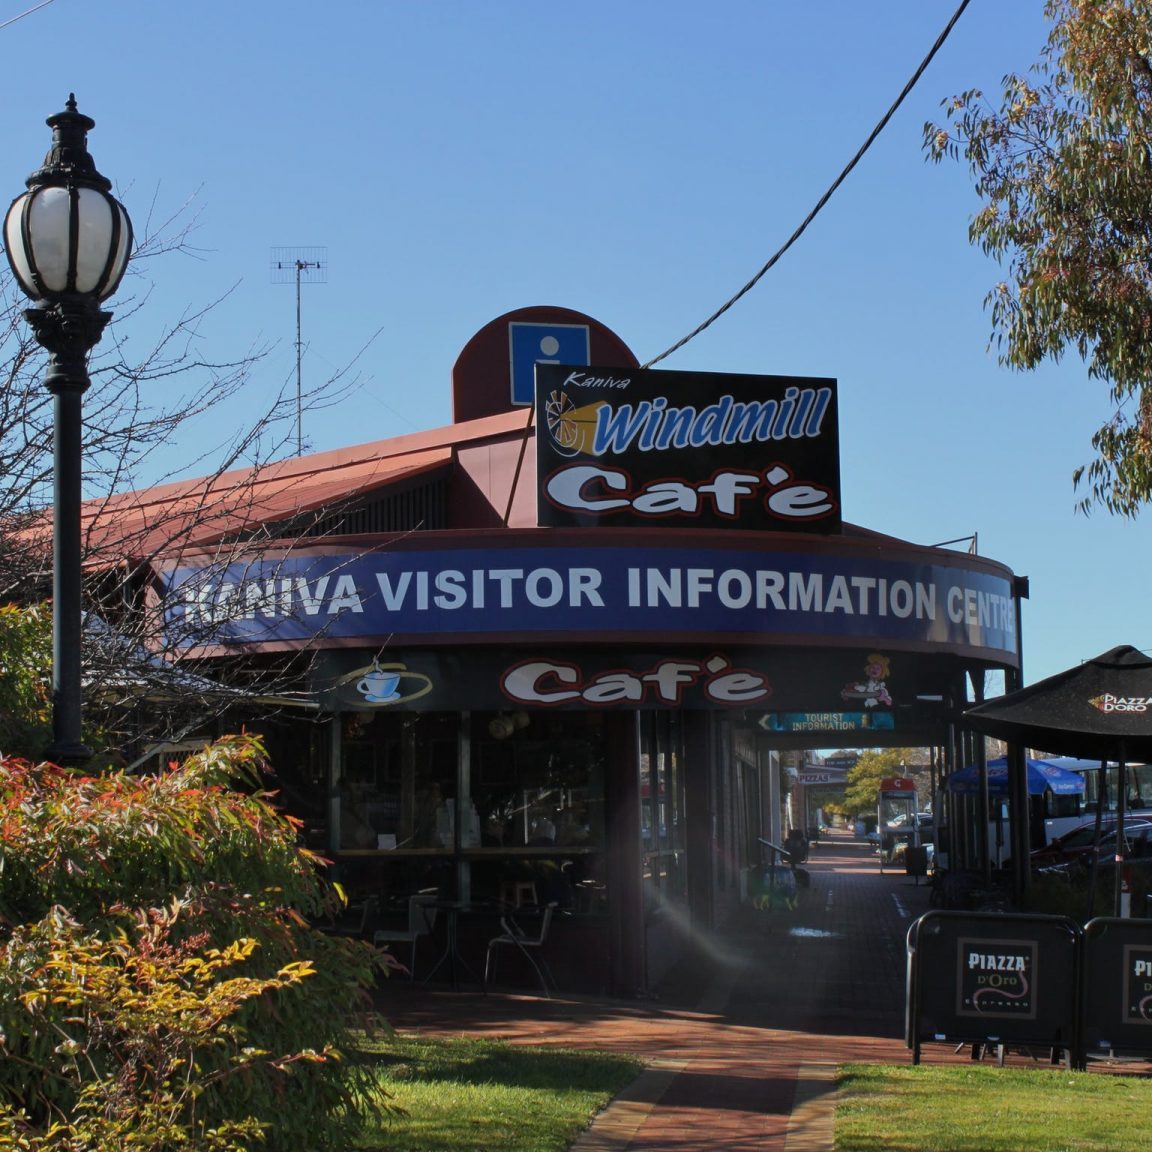 Kaniva Visitor Information Centre